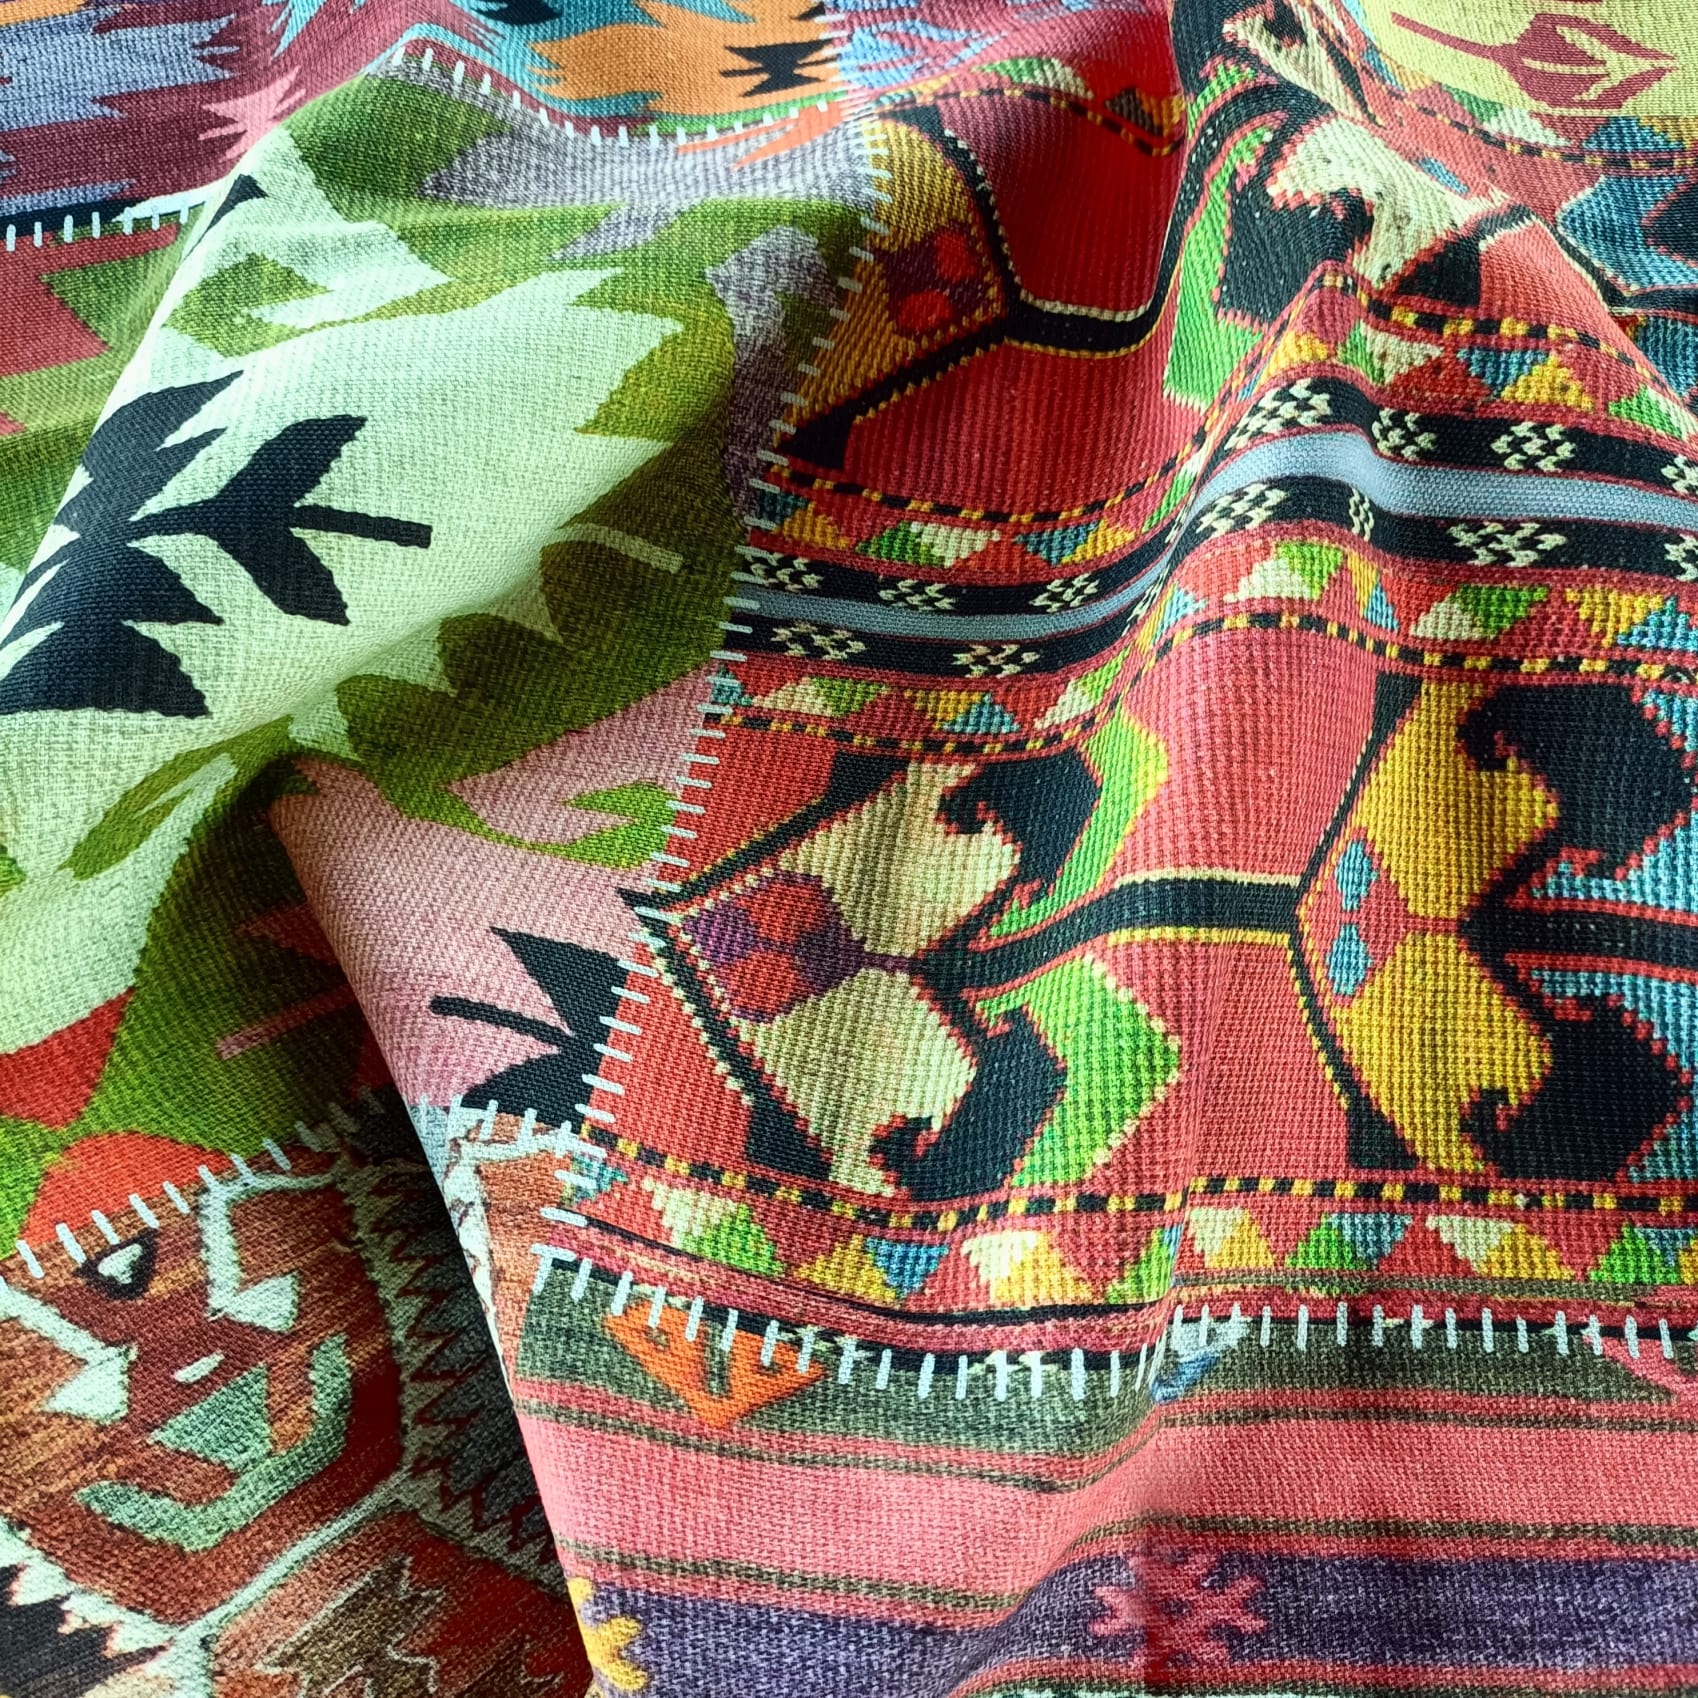 tessuti artistici con stile tappeto per arredamento contract ideali per ristoranti e bar in cotone panama